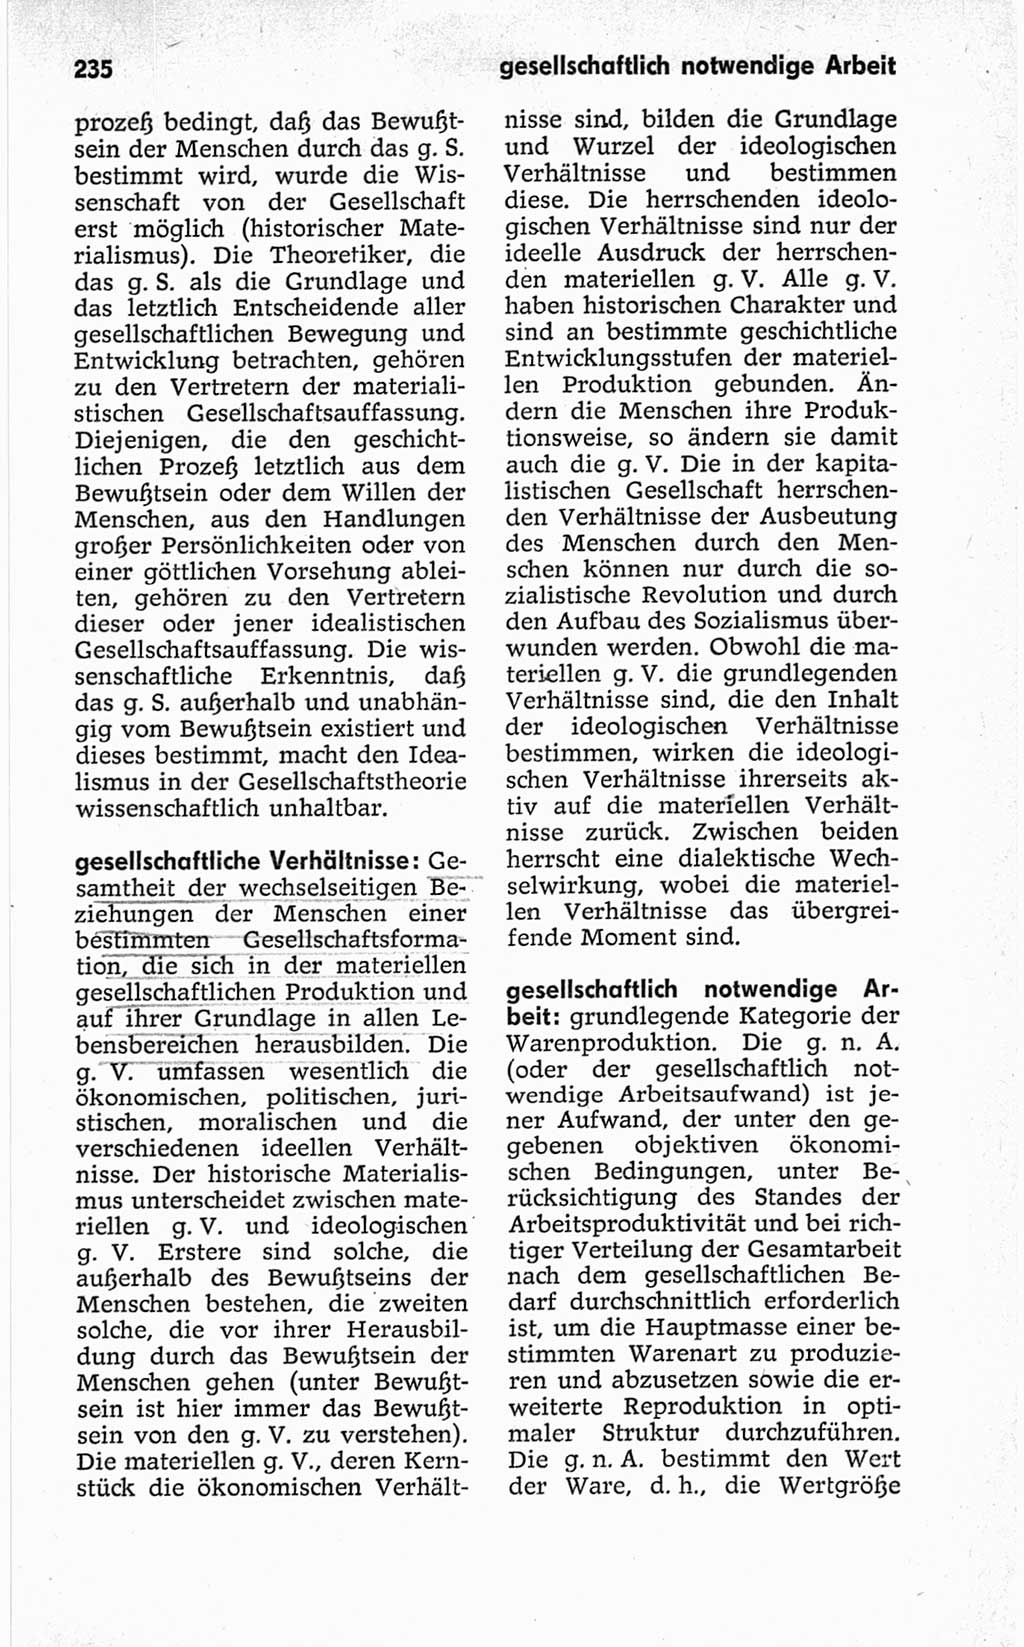 Kleines politisches Wörterbuch [Deutsche Demokratische Republik (DDR)] 1967, Seite 235 (Kl. pol. Wb. DDR 1967, S. 235)